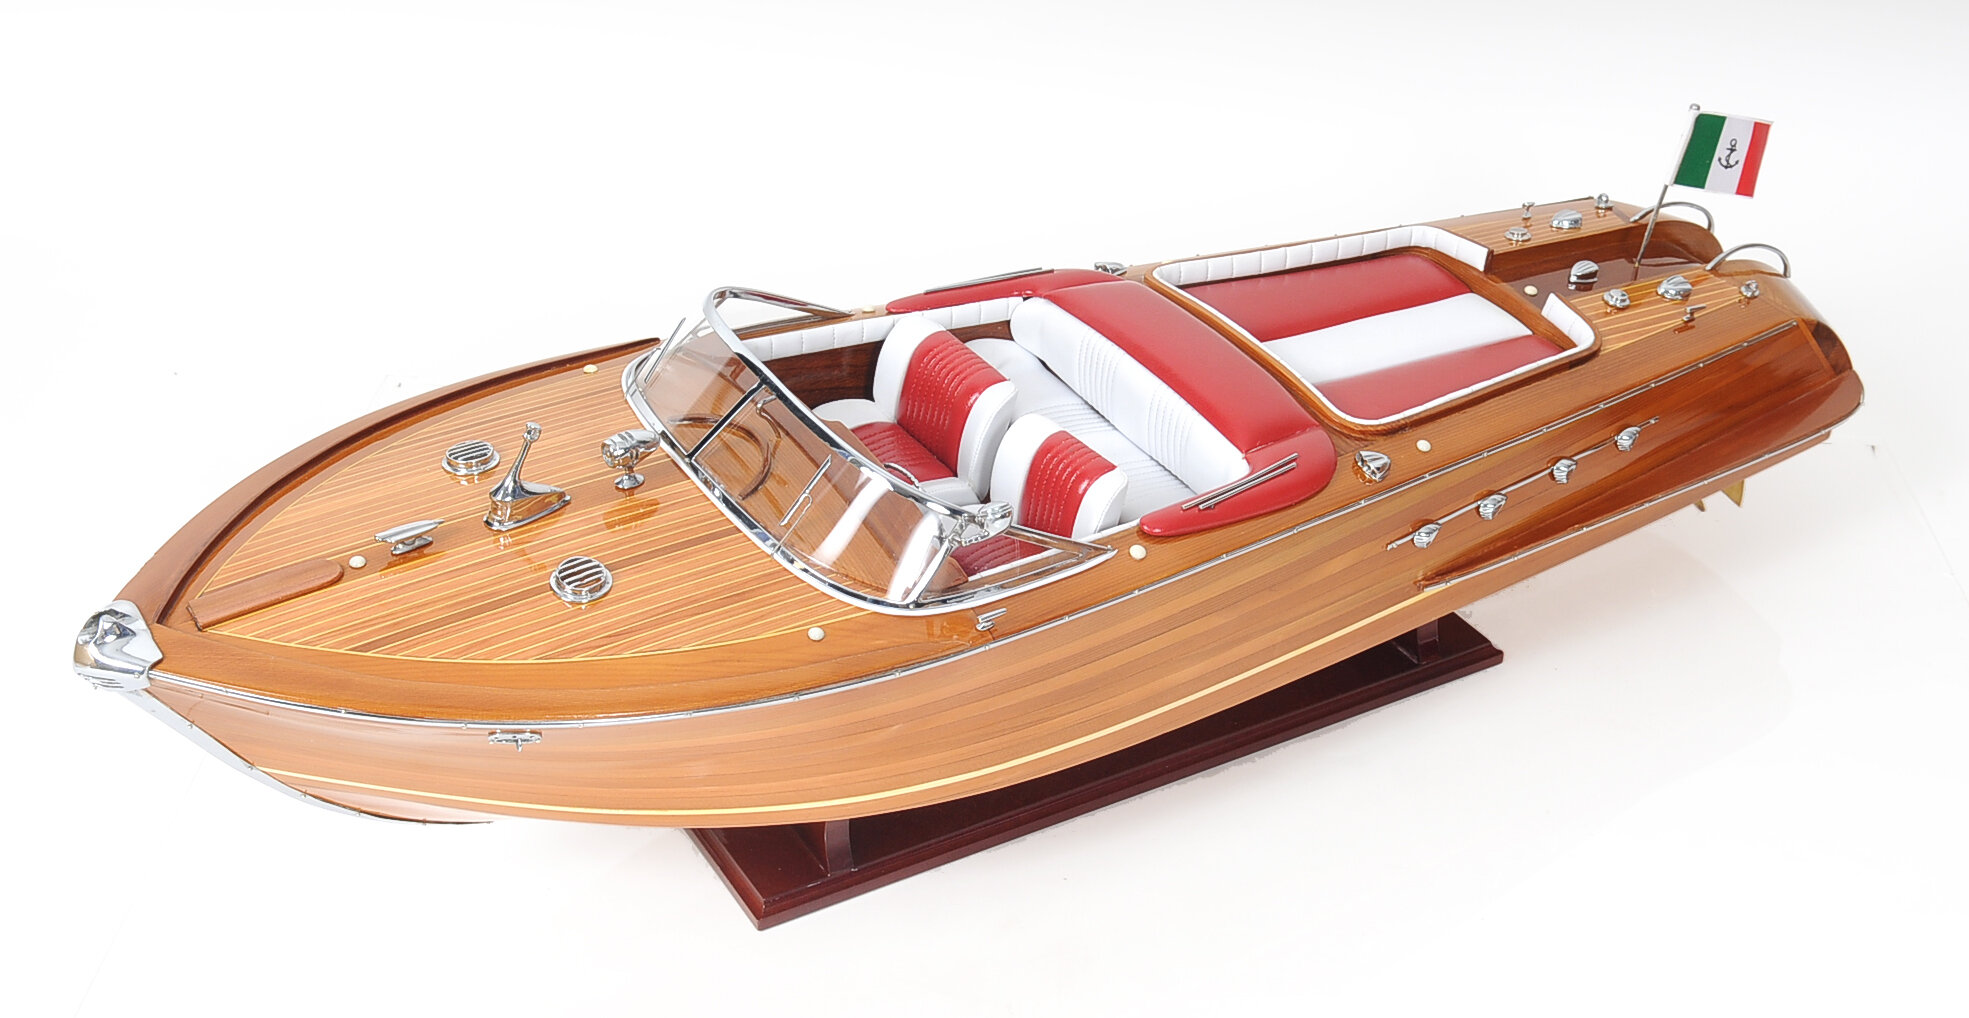 Lot Of 2 Models Riva Aquarama 20" Wood Model Boat L50 Quality Home Decor 